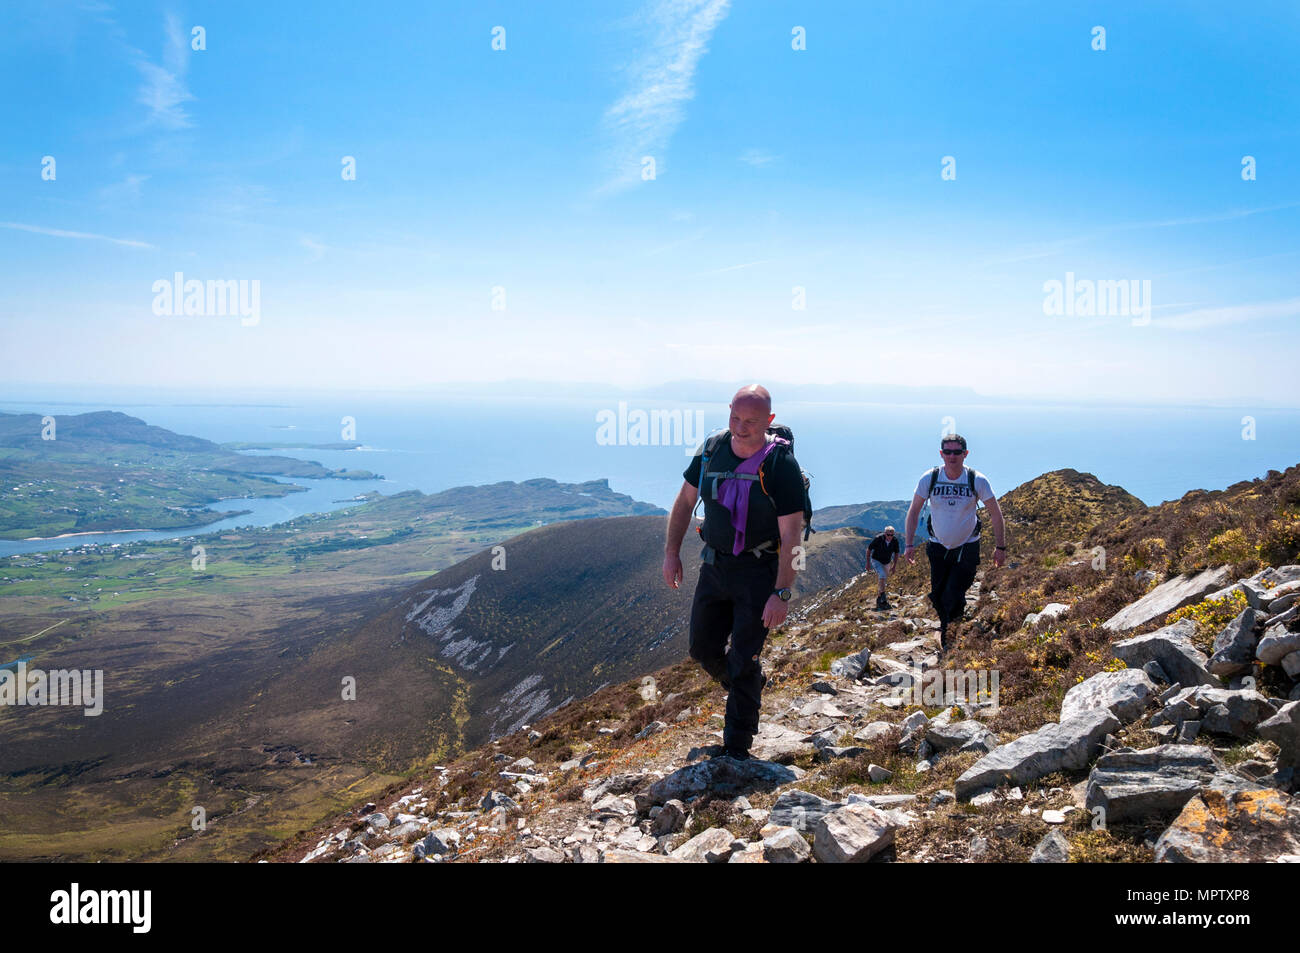 Hill walkers sul Sliabh Liag, Slieve League o Slieve Liag, una montagna sulla costa atlantica della Contea di Donegal, Irlanda. Foto Stock